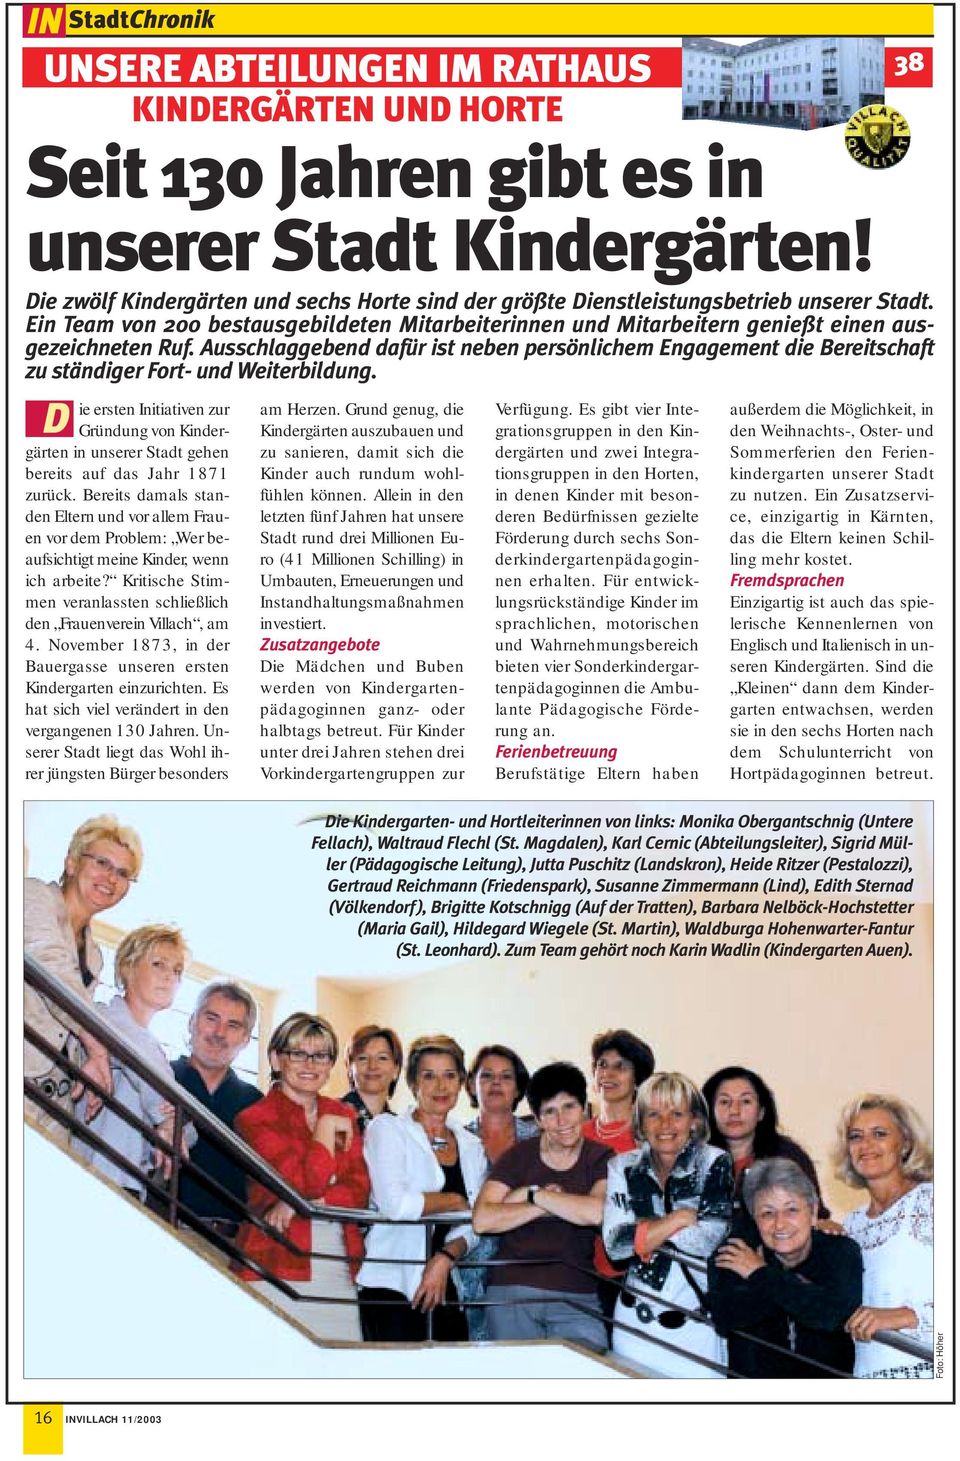 Partnersuche online in warmbad-judendorf, Umhausen single 